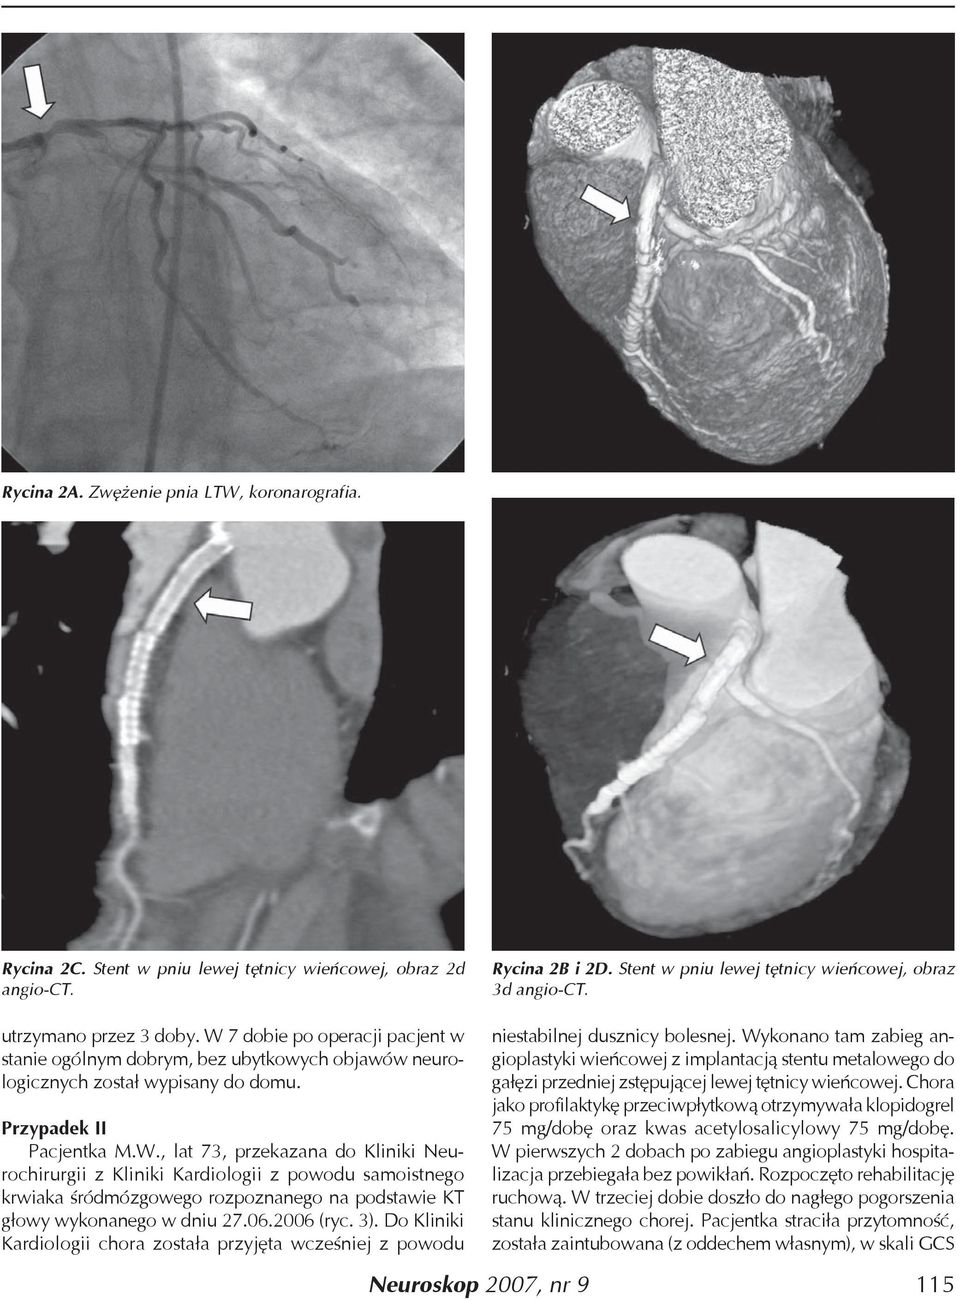 06.2006 (ryc. 3). Do Kliniki Kardiologii chora została przyjęta wcześniej z powodu Rycina 2B i 2D. Stent w pniu lewej tętnicy wieńcowej, obraz 3d angio-ct. niestabilnej dusznicy bolesnej.